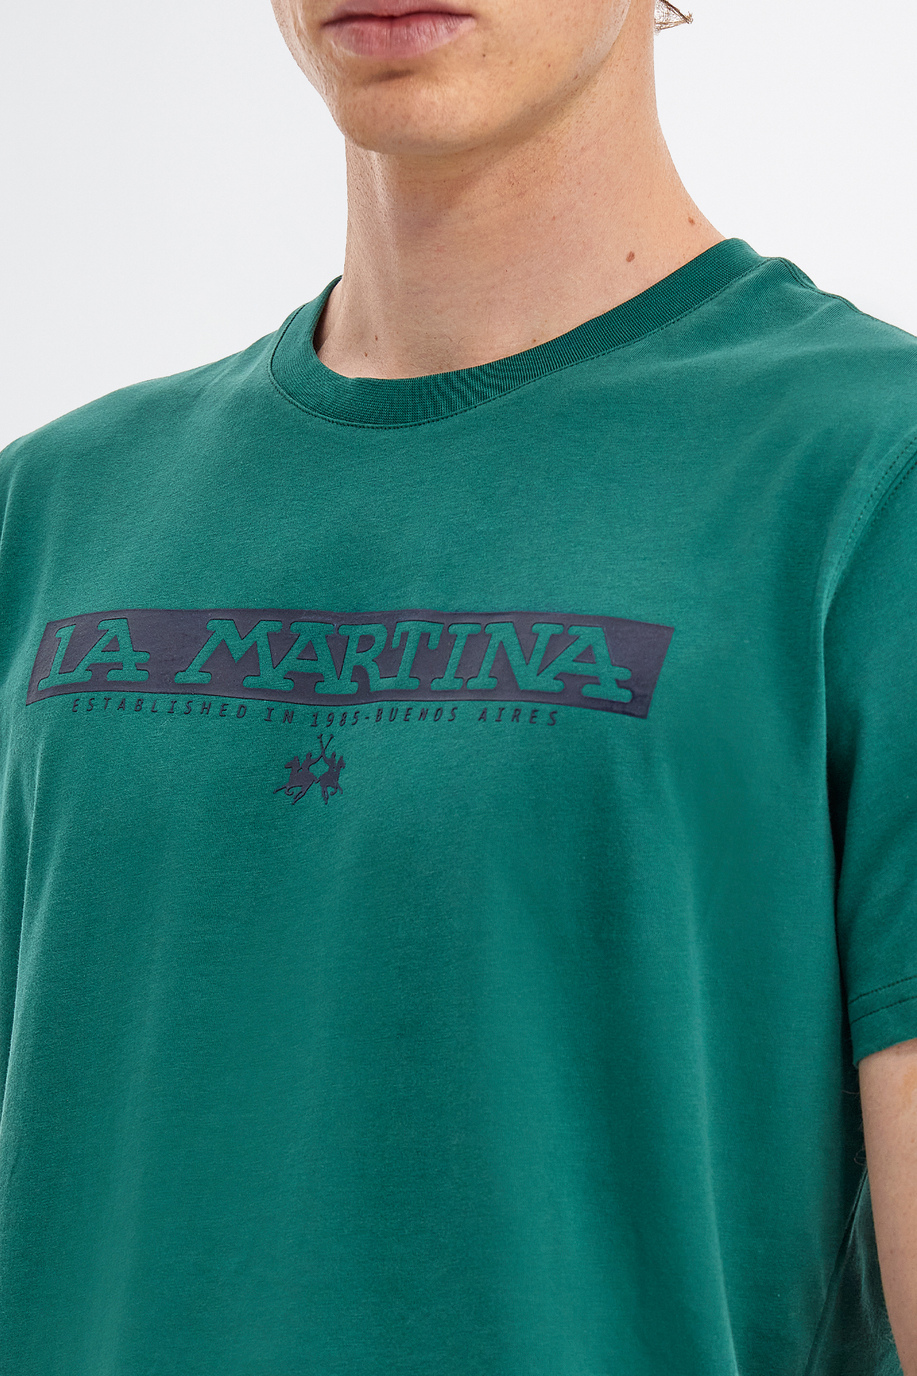 T-shirt da uomo a maniche corte modello girocollo regular fit - Regali a meno di CHF 80 per lui | La Martina - Official Online Shop